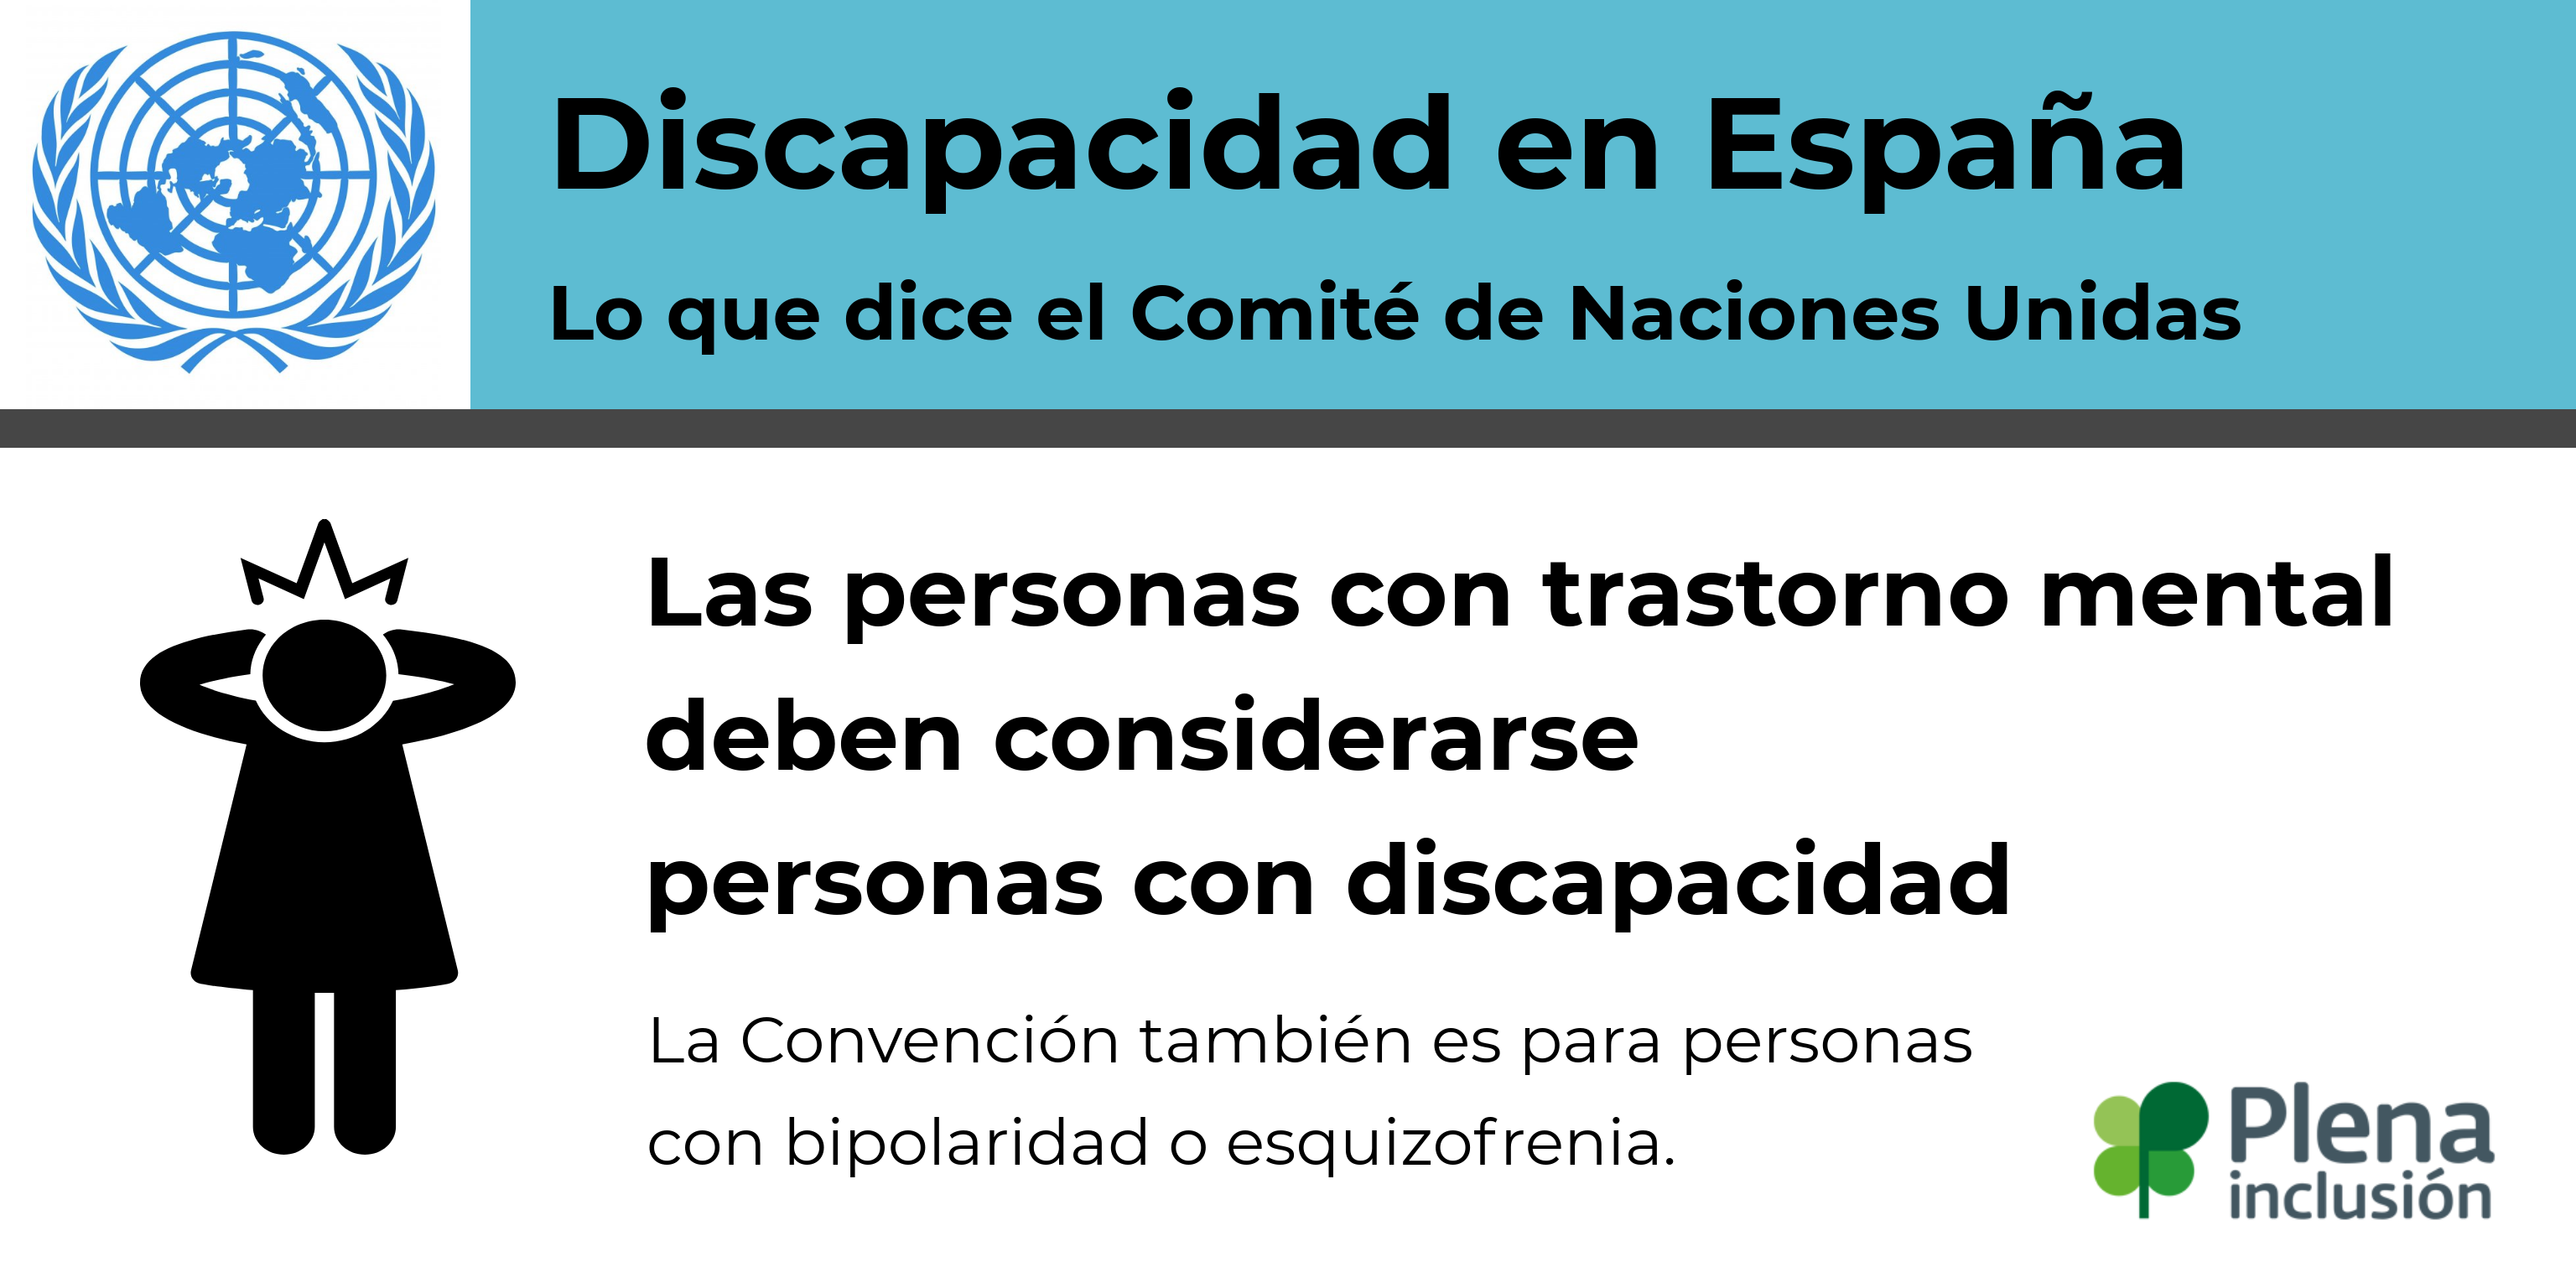 Ir a : Lo que dice el Comité: España debe considerar el trastorno mental como discapacidad